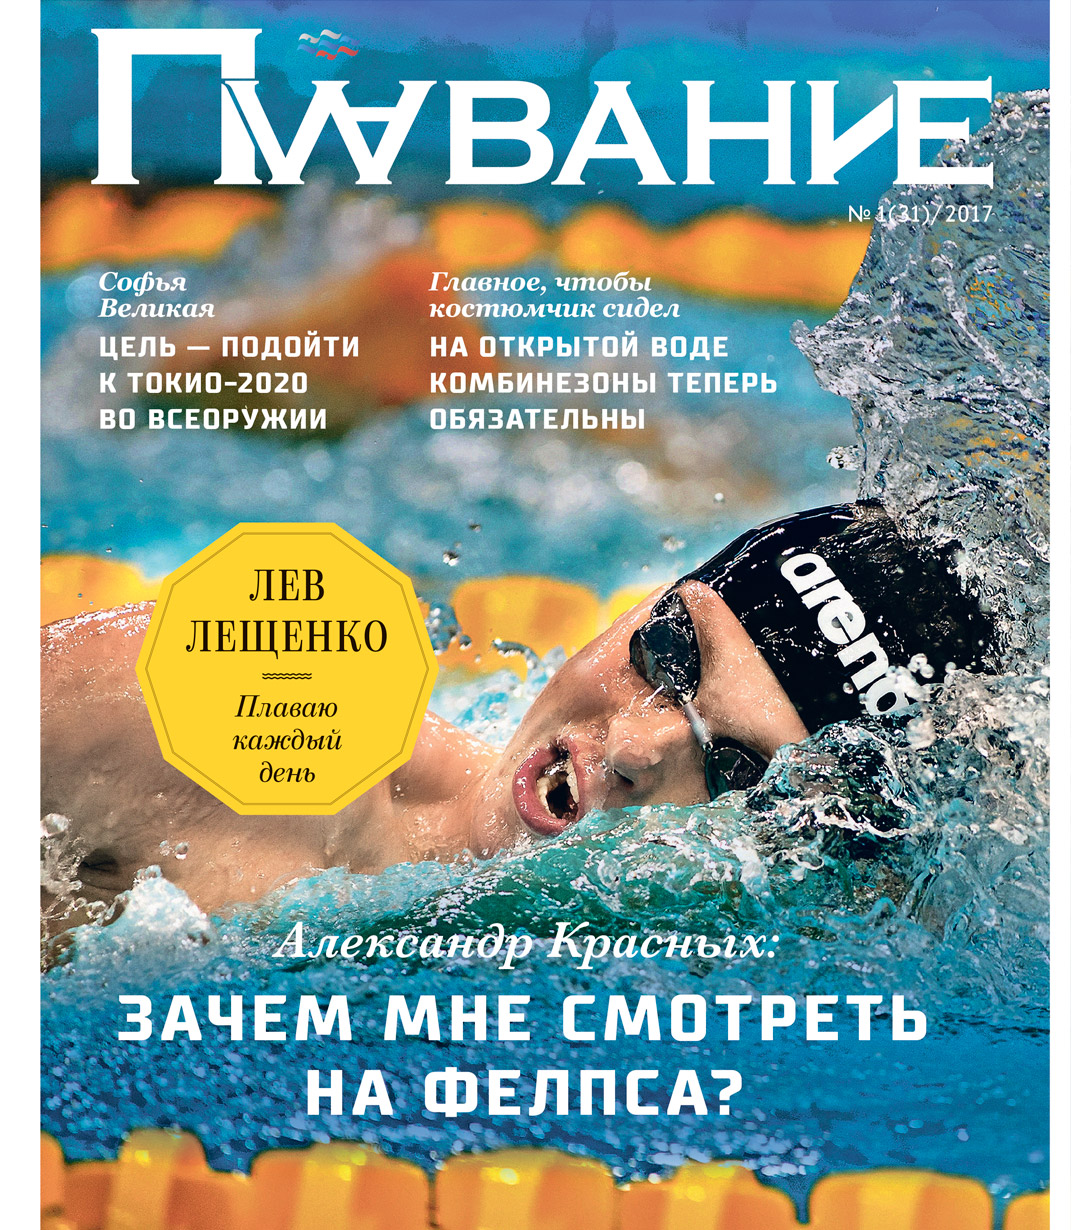 Журнал "Плавание" Выпуск №1 зима 2017